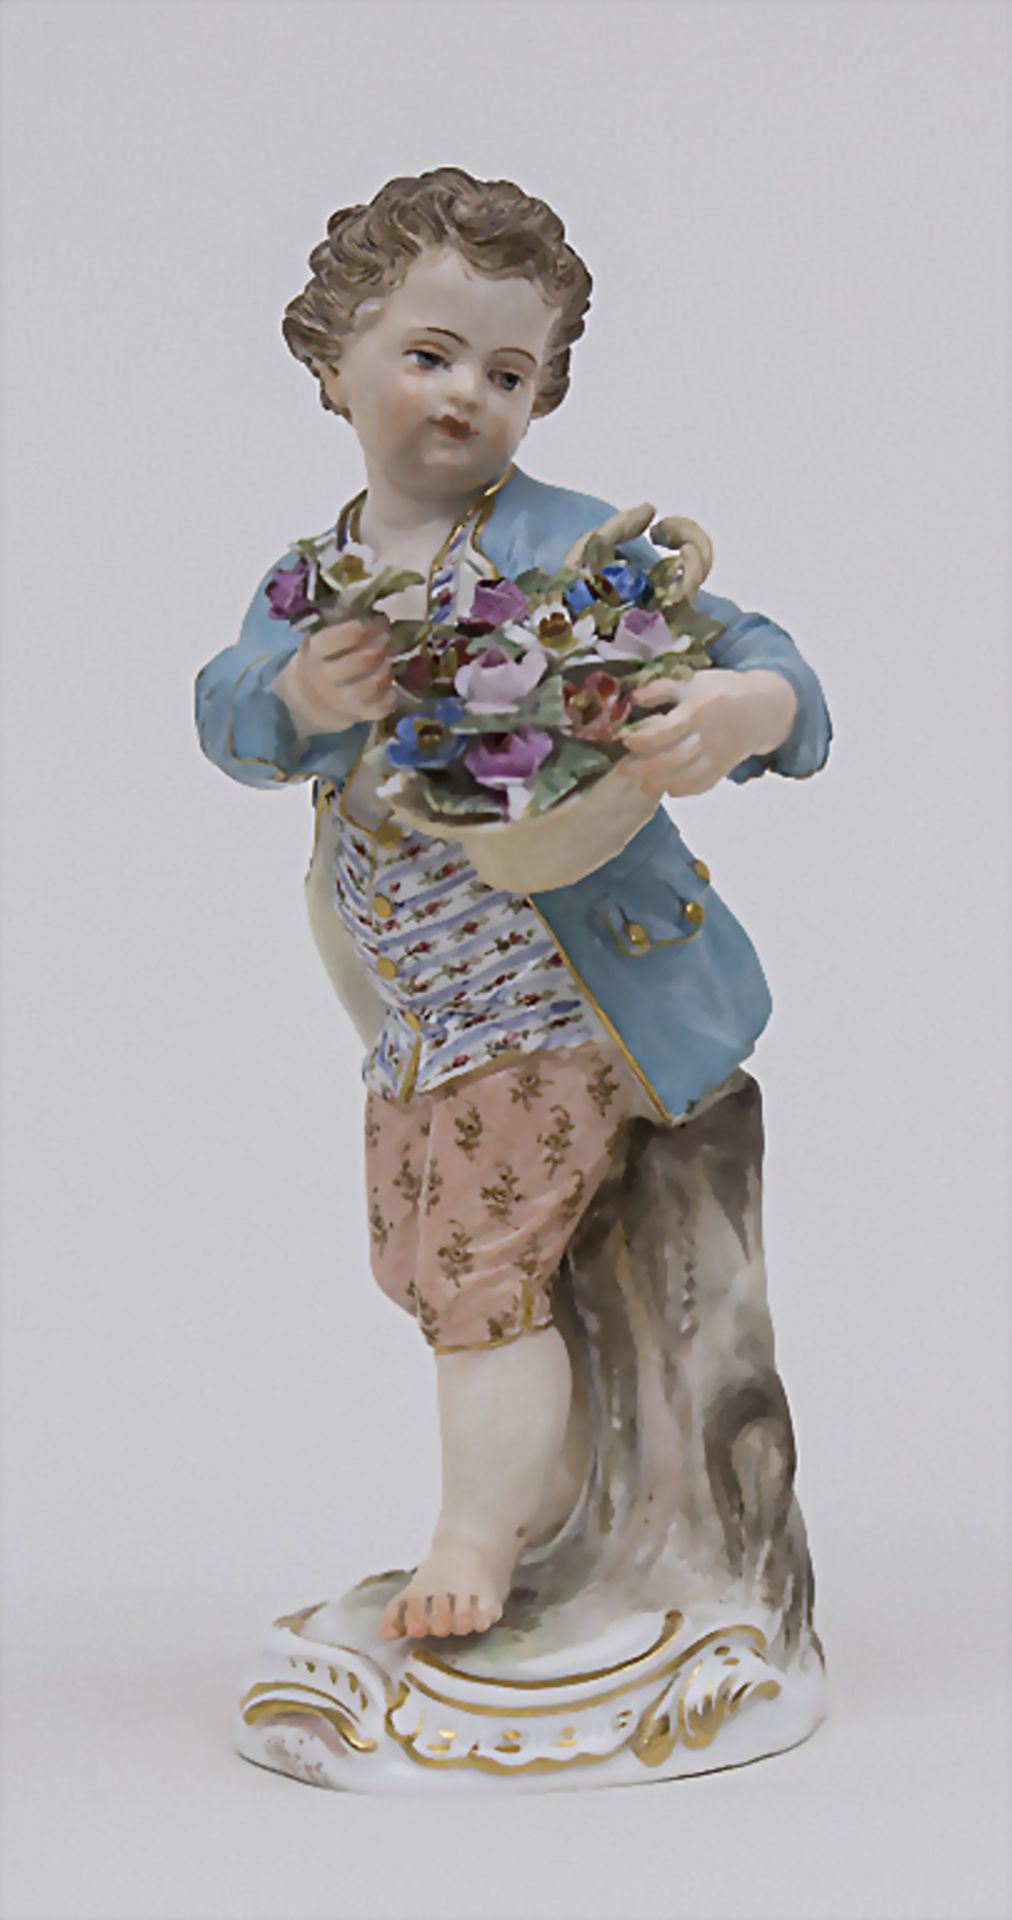 Gärtnerkind 'Junge mit Blumenkorb' / A gardener's child 'boy with flower basket', Meissen, Mitte 19.